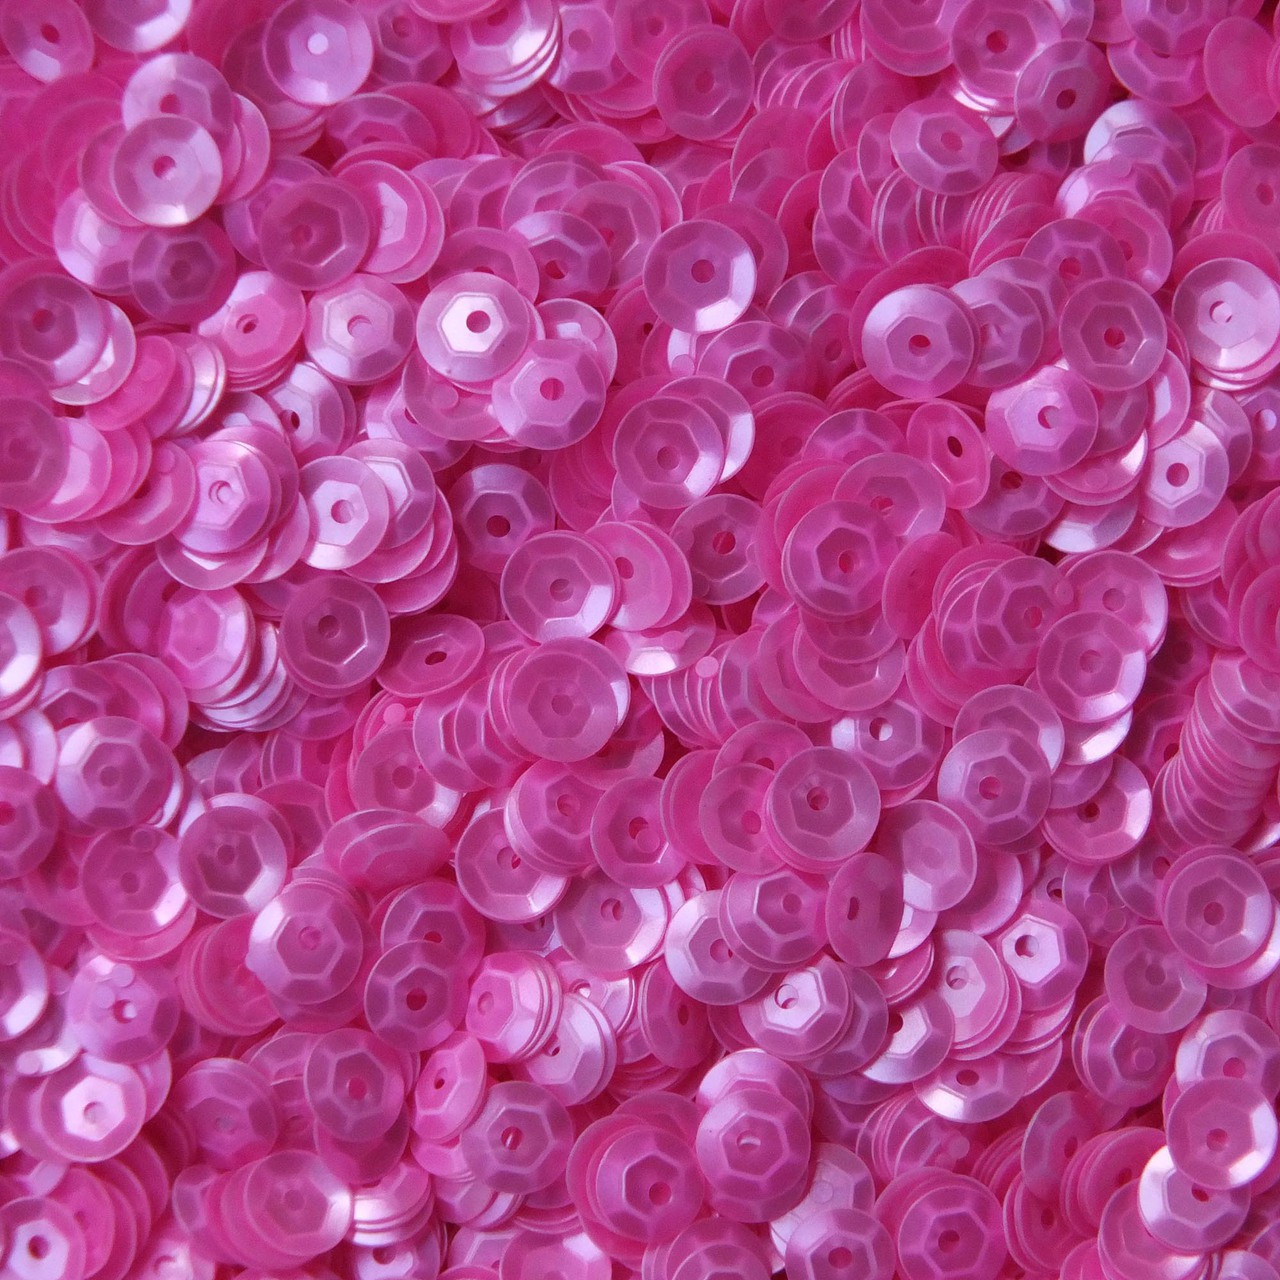 5mm Cup Sequins Satin Hot Pink Neon Opaque